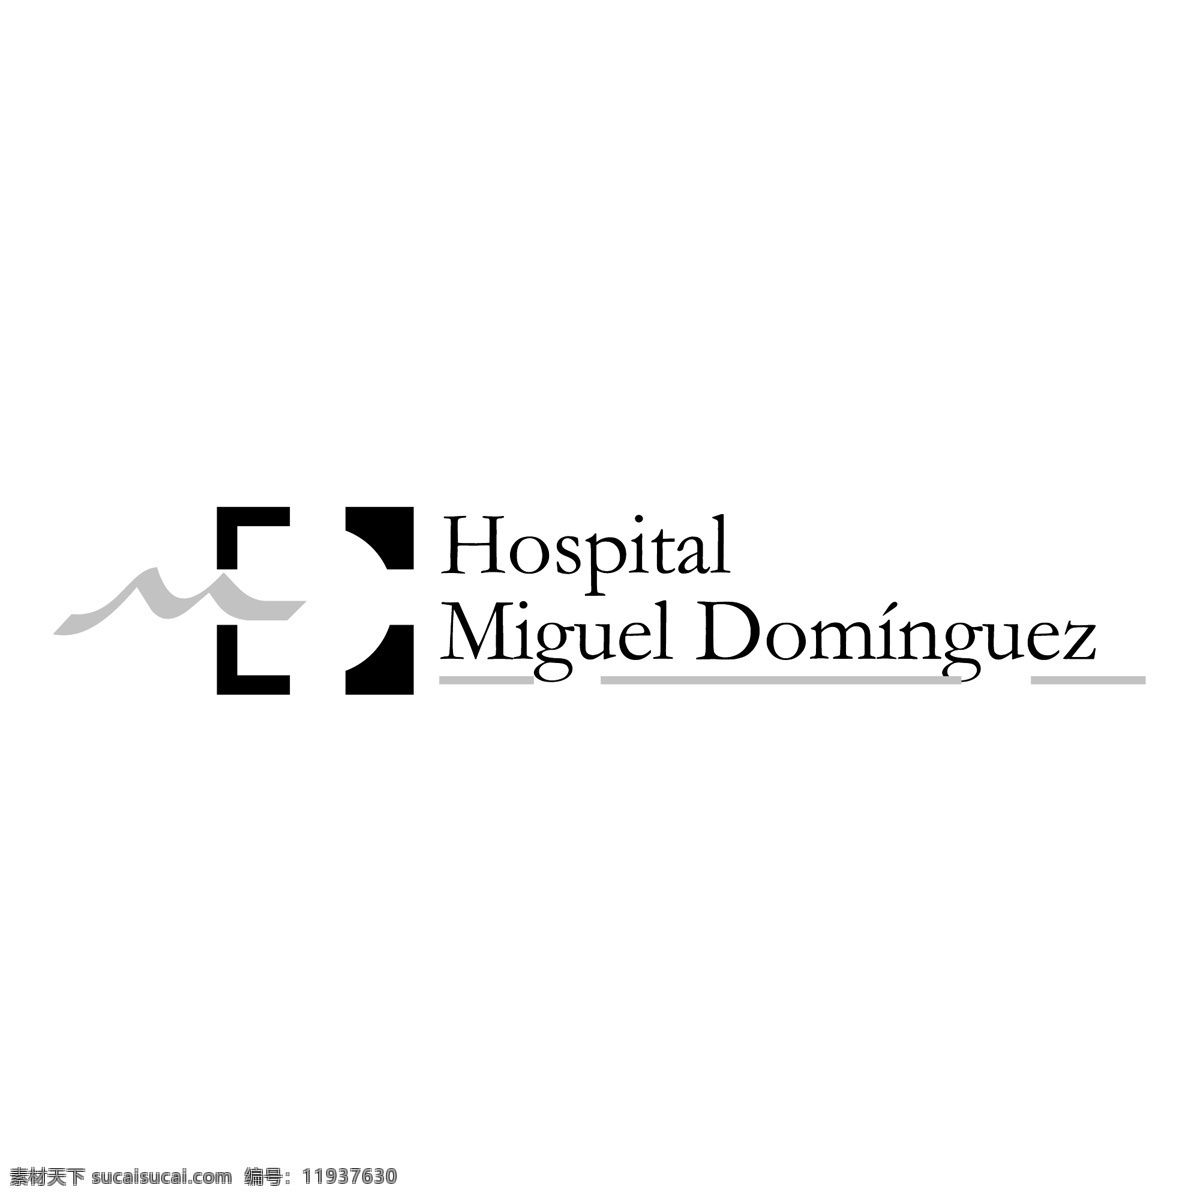 医院 米格尔 明 戈斯 免费 标志 标识 psd源文件 logo设计